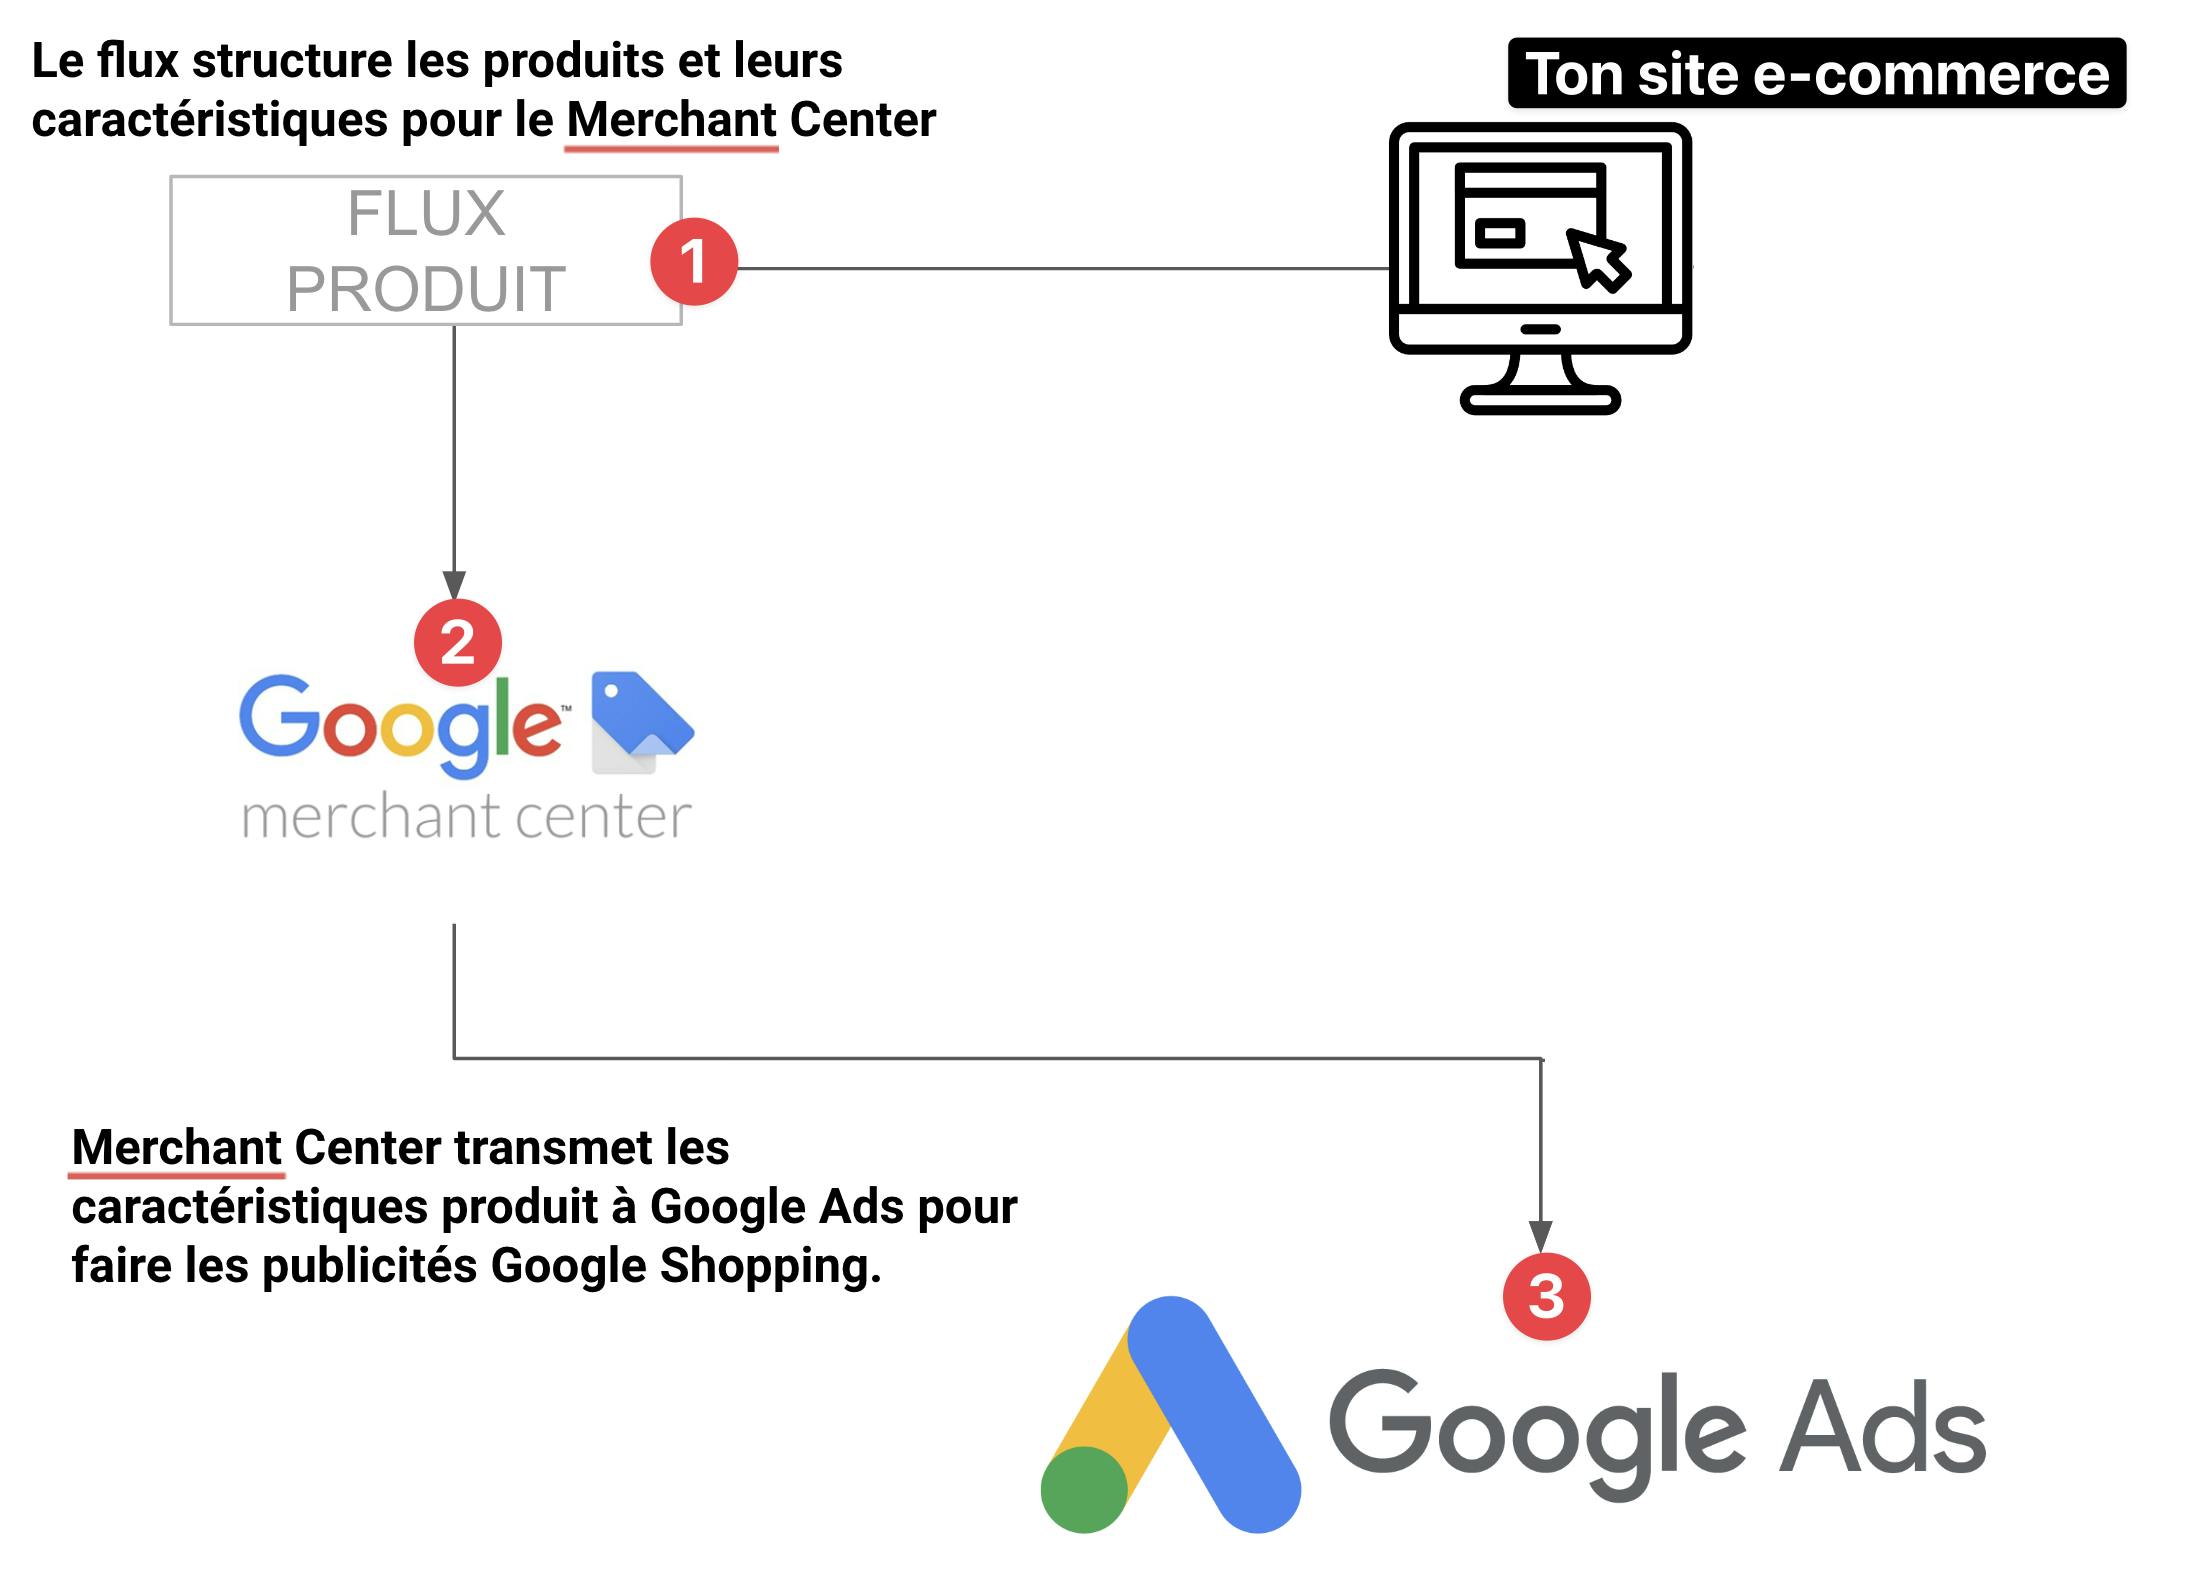 Schéma de fonctionnement de Google Merchant Center + Flux Shopping + Google Ads en e-commerce